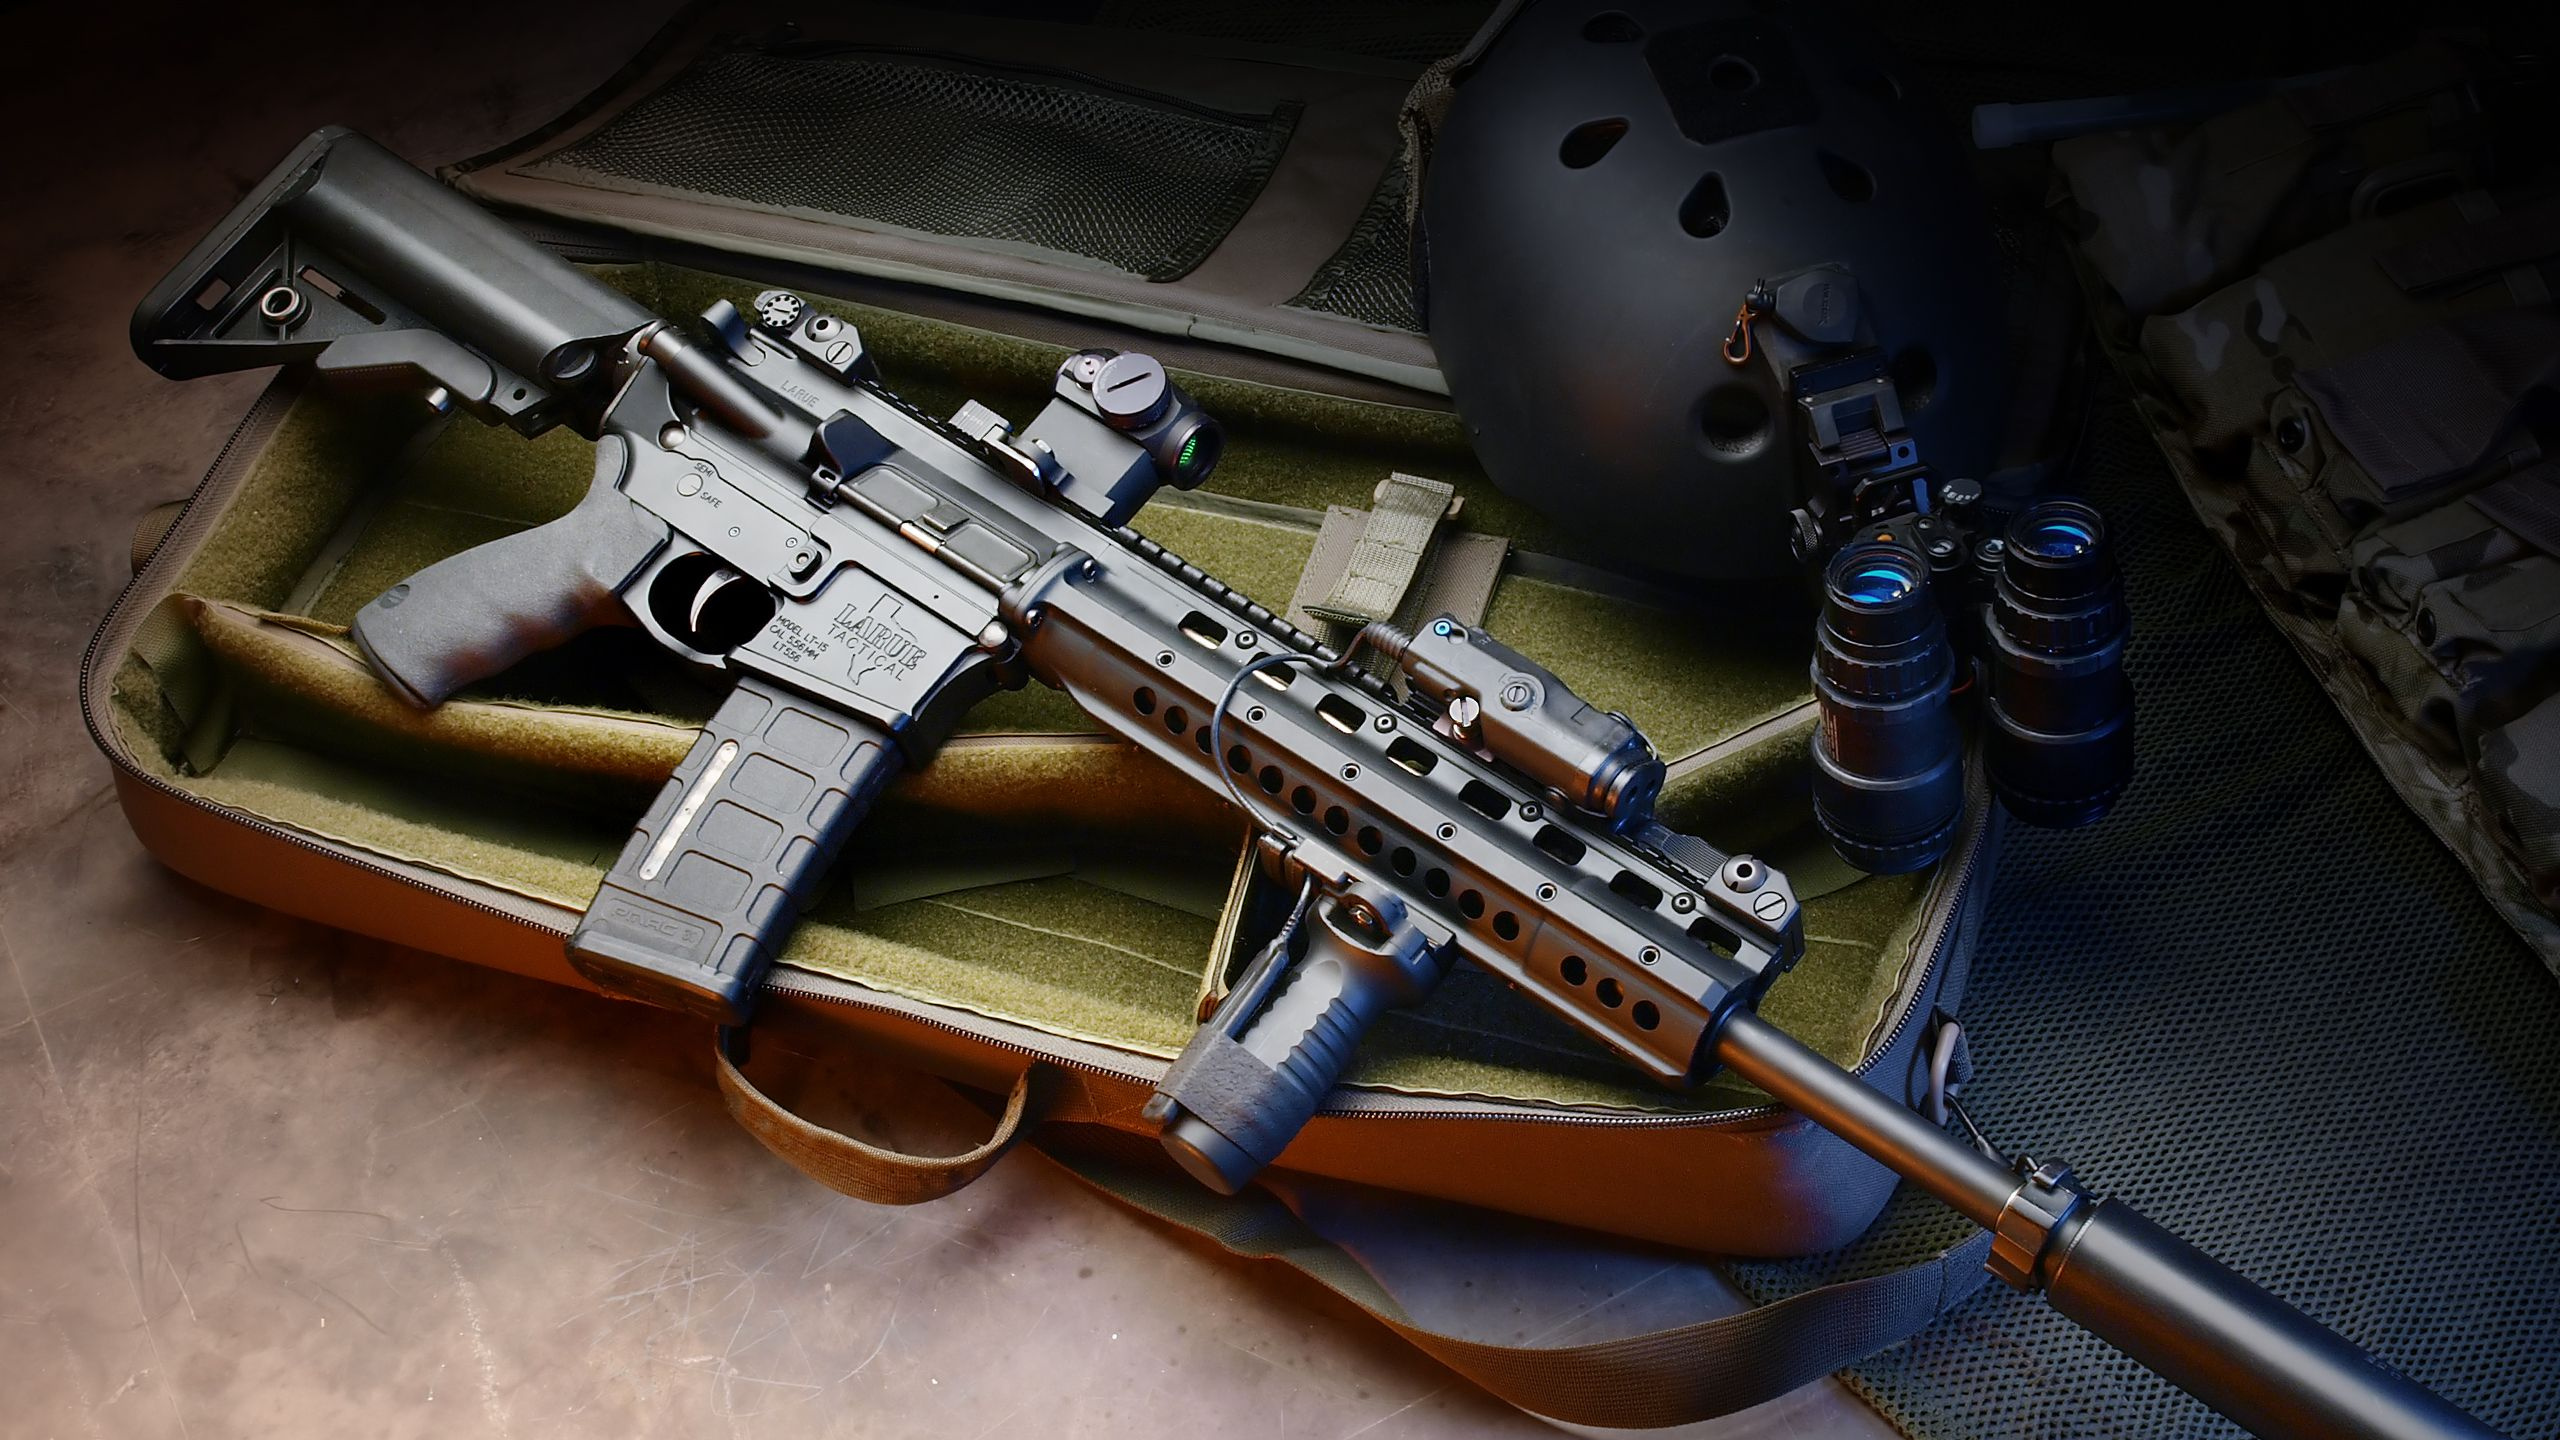 Carabina M4, Carabina, Arma, Gatillo, Pistola de Aire. Wallpaper in 2560x1440 Resolution